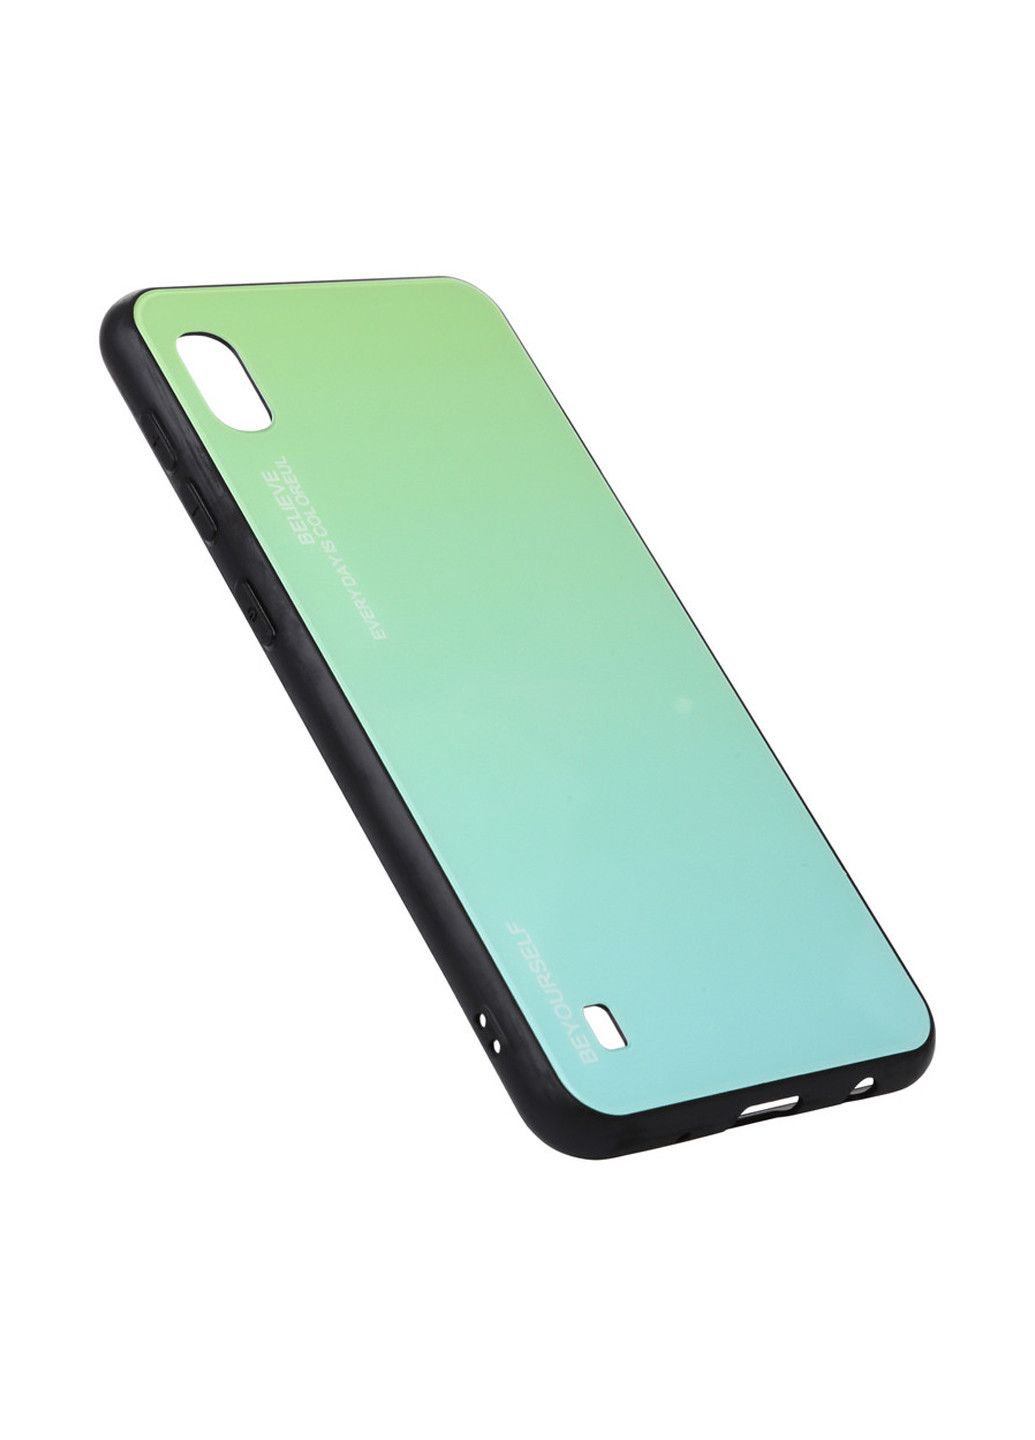 Панель Gradient Glass для Xiaomi Mi 8 Lite Green-Blue (703572) BeCover gradient glass для xiaomi mi 8 lite green-blue (703572) (147838012)